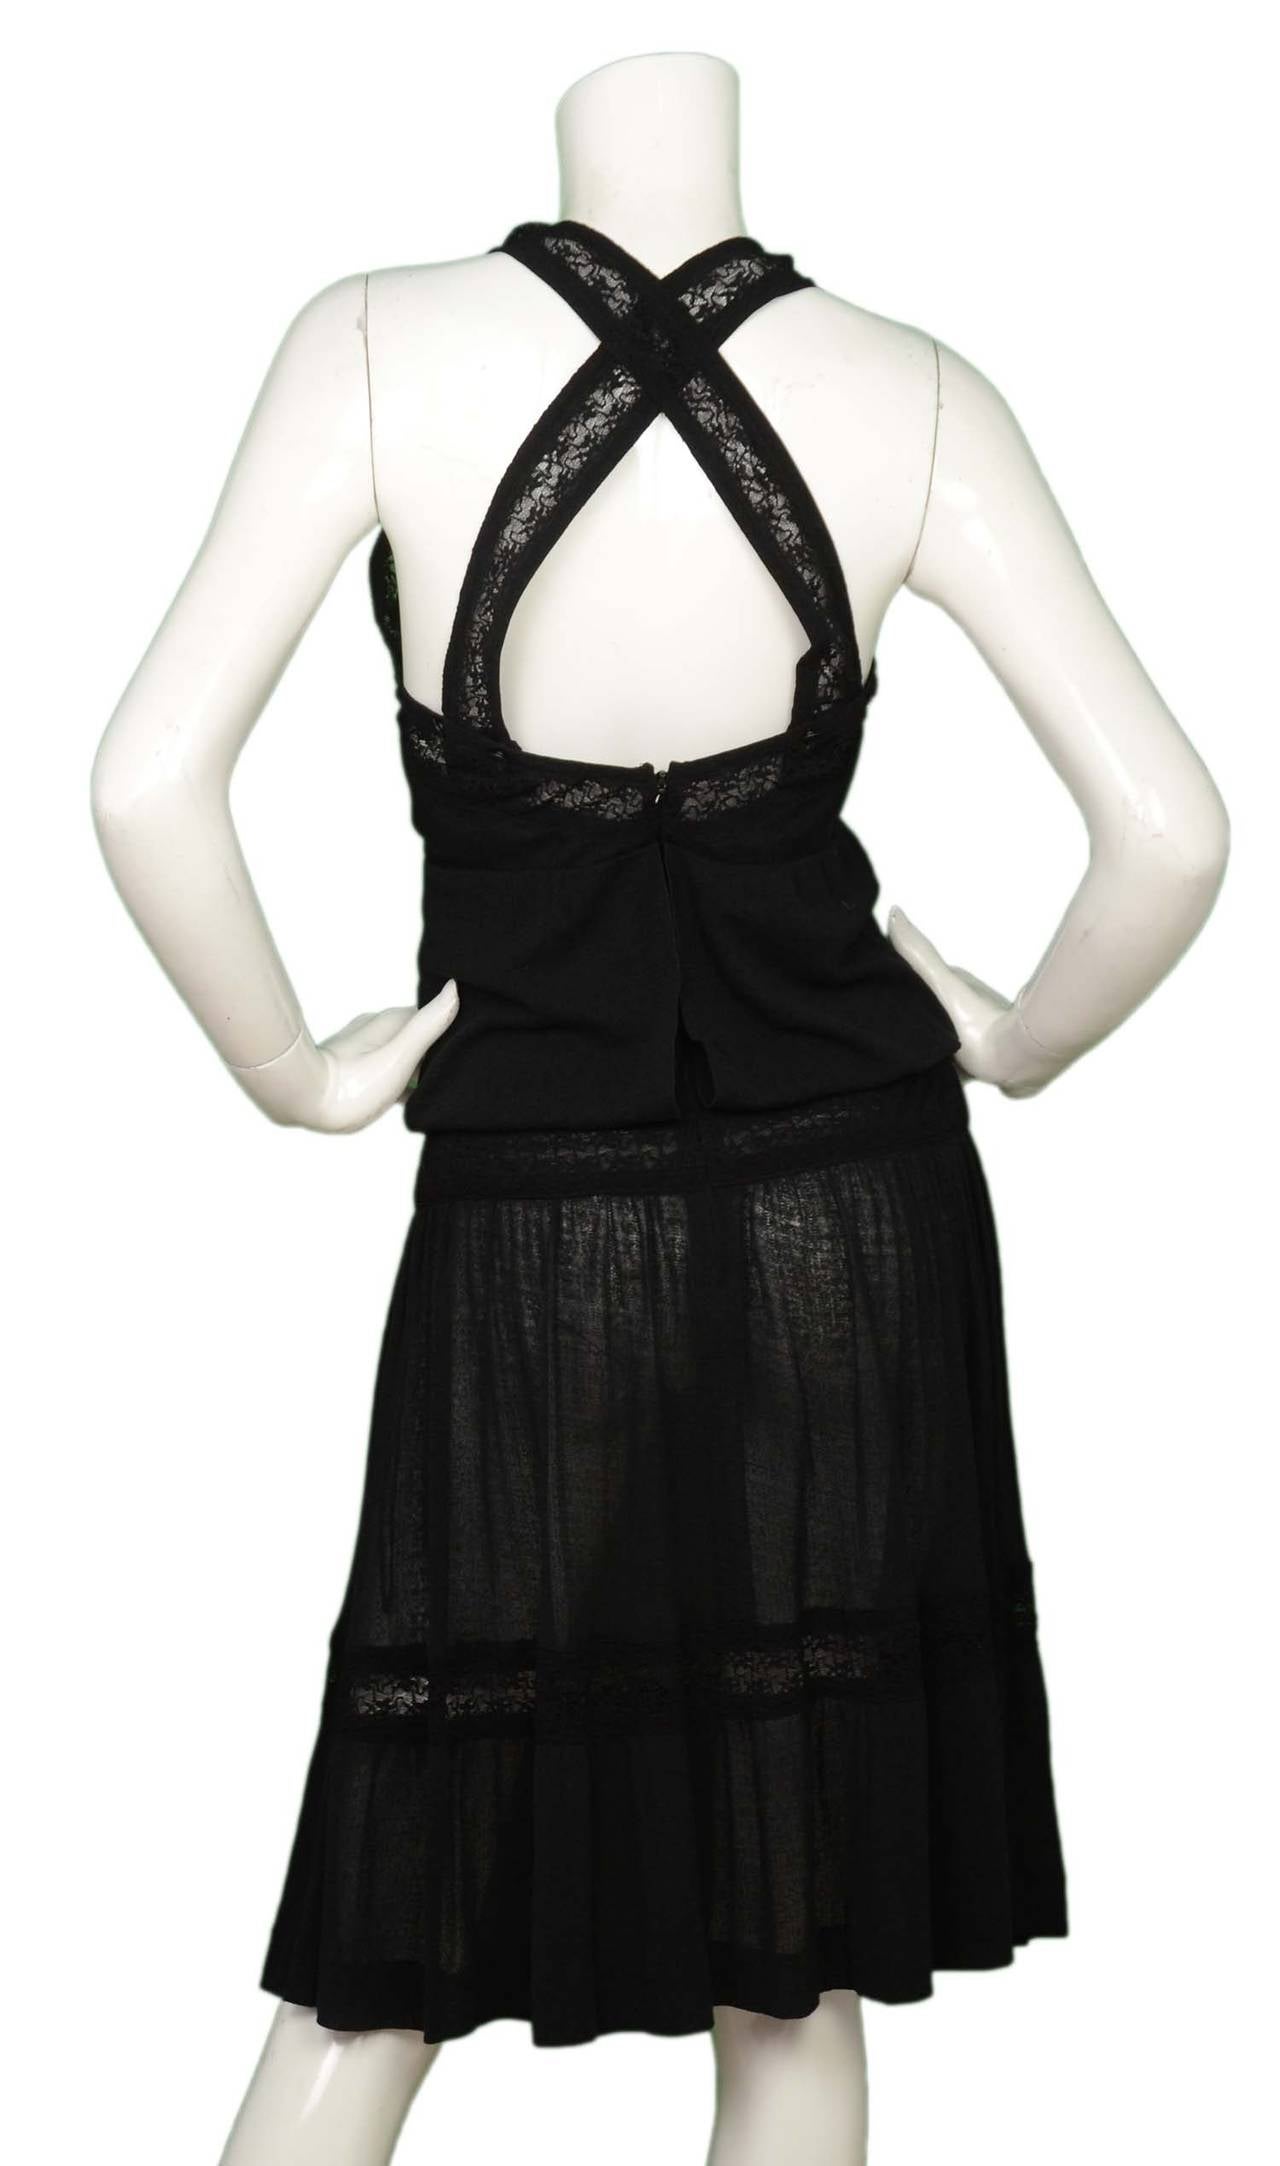 Women's CHANEL 2005 Black Lace Crochet Dress w/Crisscross Back sz 38 rt $2, 465